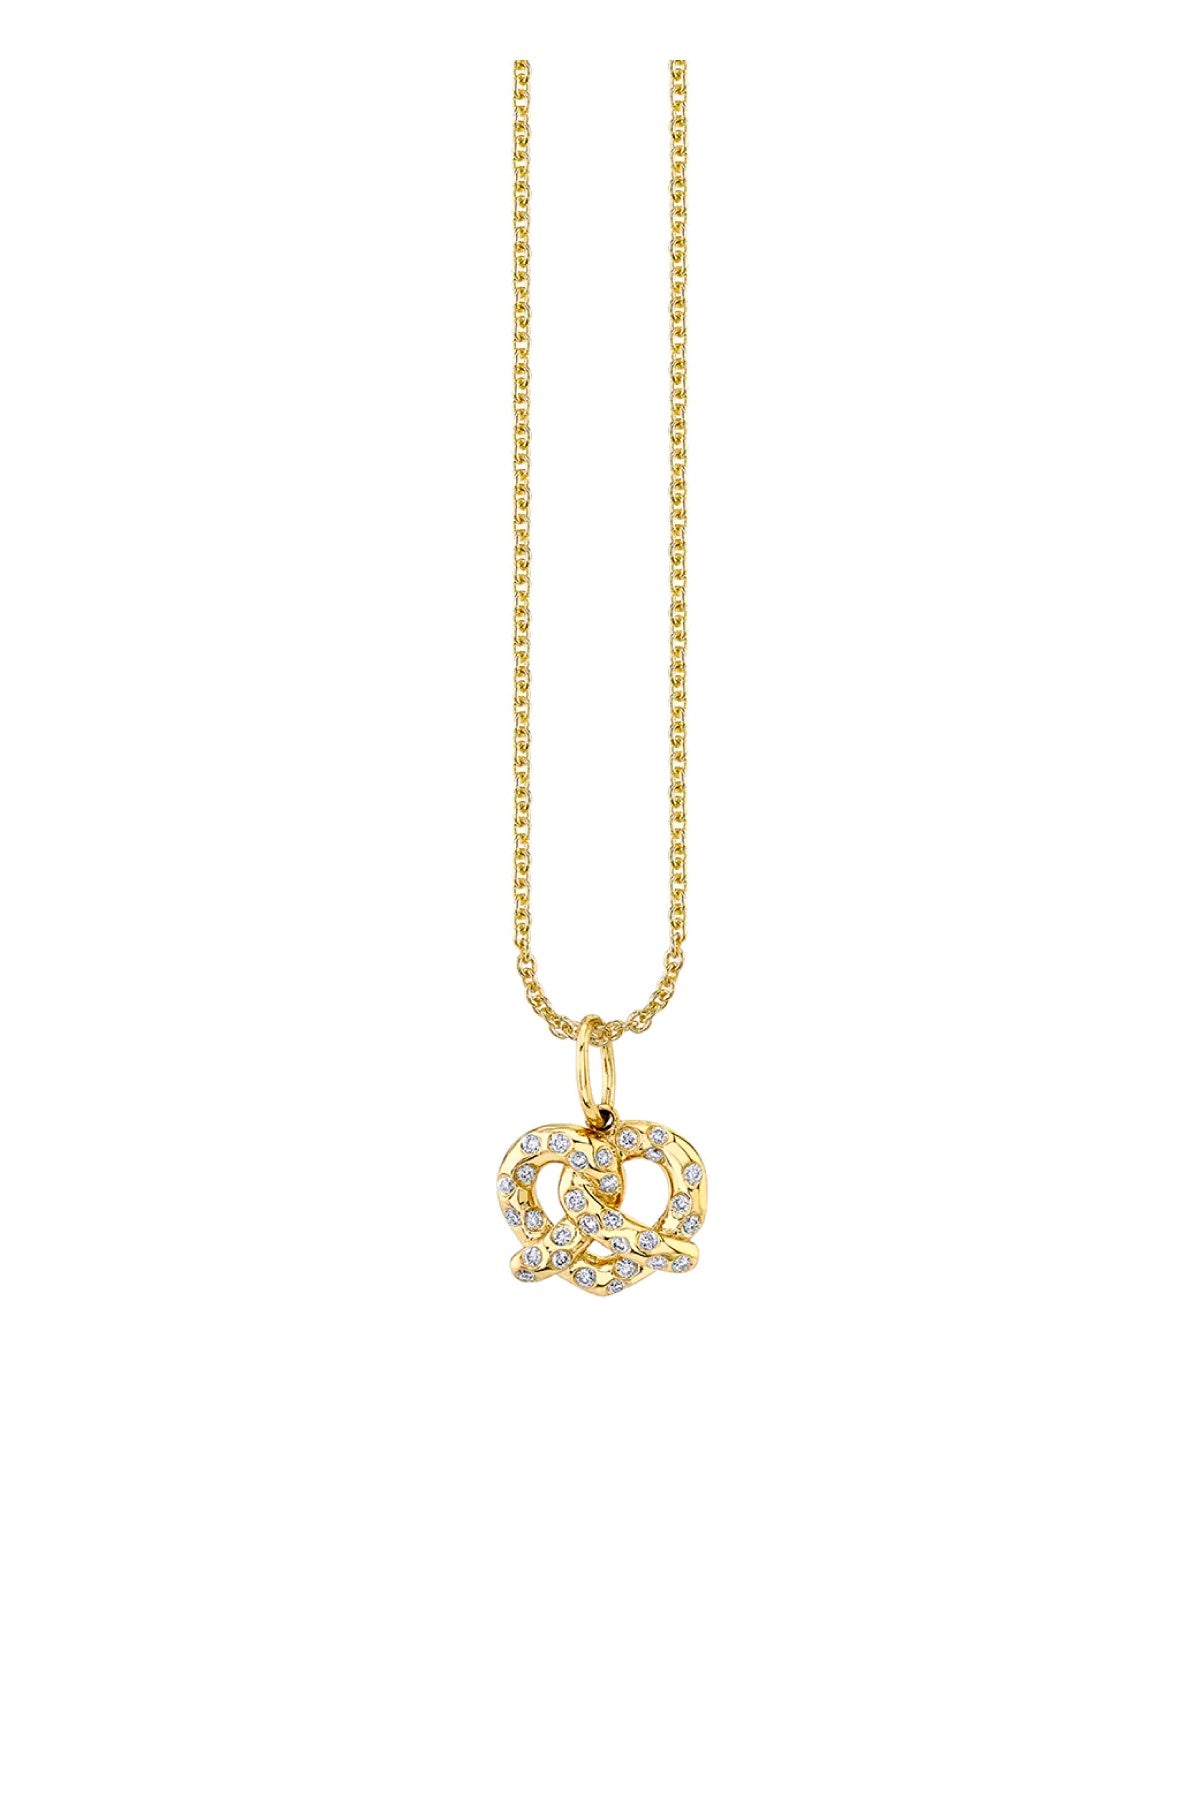 Sydney Evan Diamond Pretzel Charm Necklace - Yellow Gold